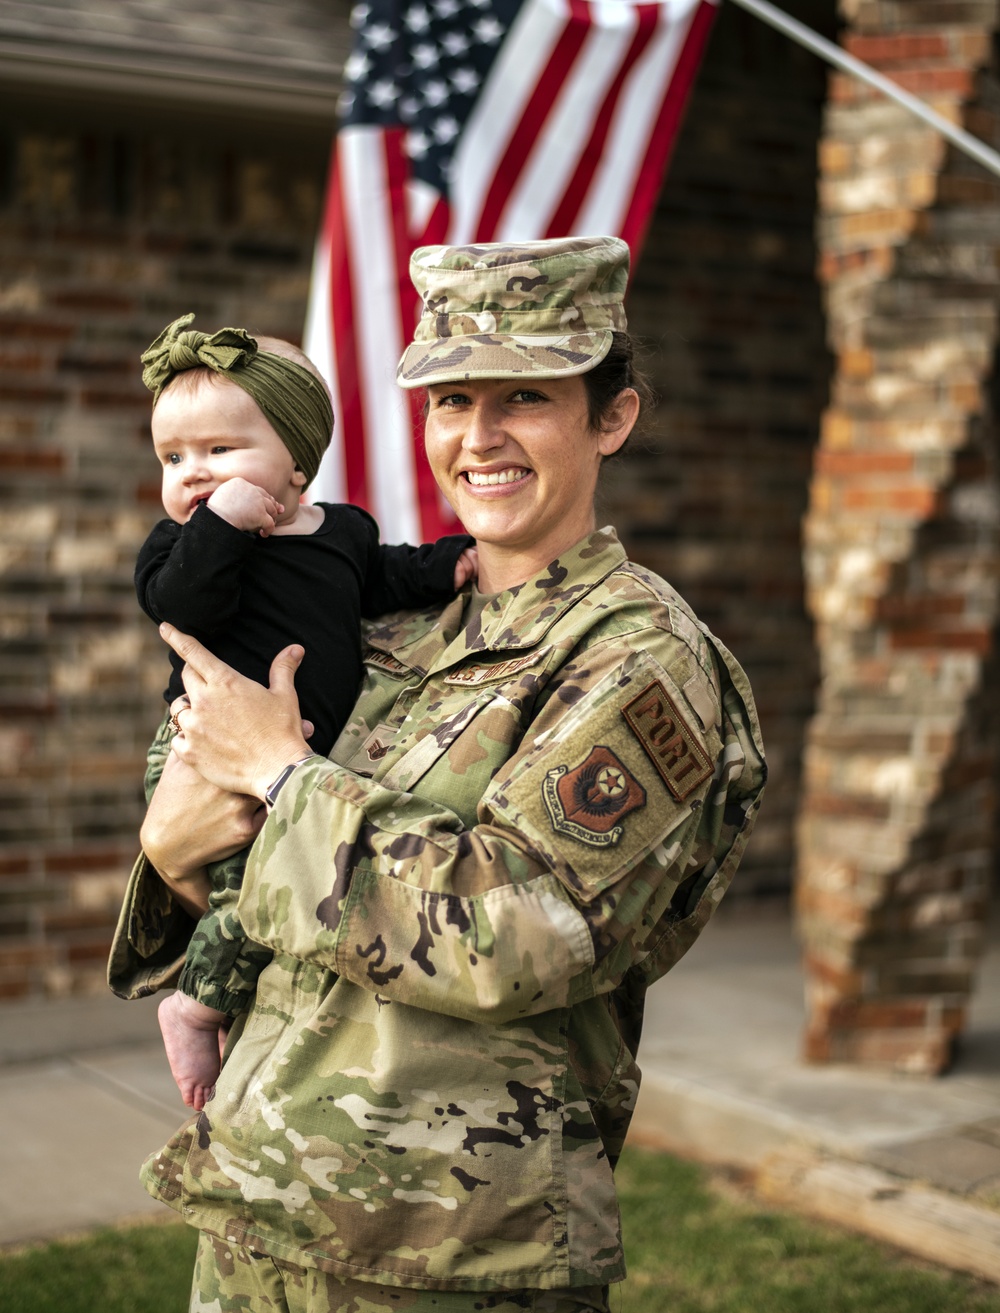 Oklahoma National Guard Airman donates breast milk to Louisiana baby in need